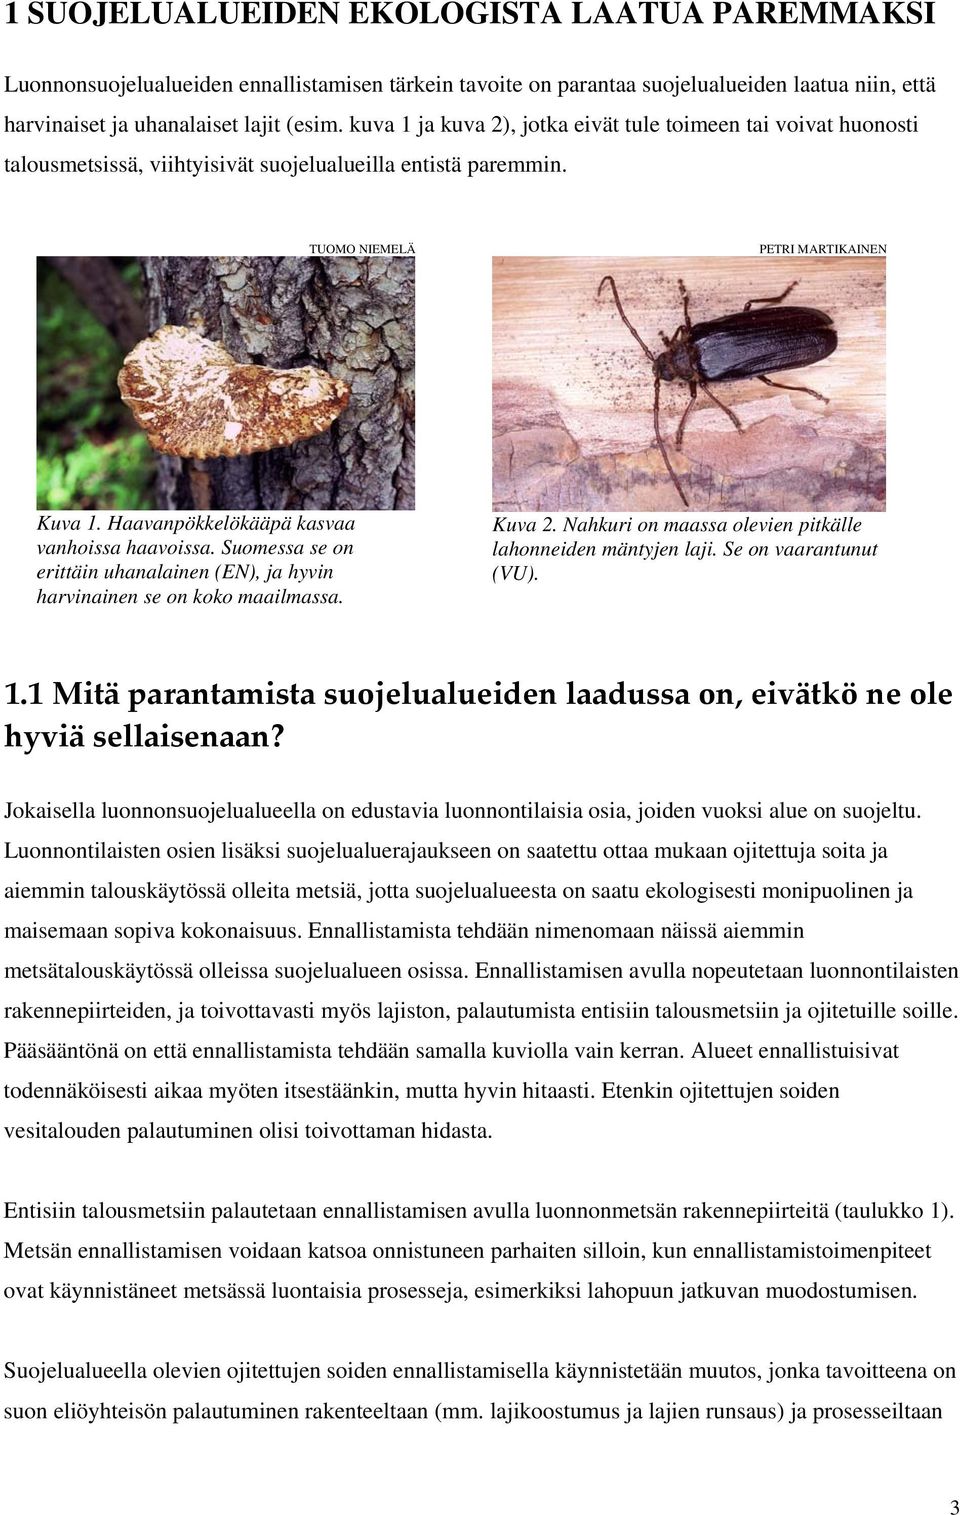 Haavanpökkelökääpä kasvaa vanhoissa haavoissa. Suomessa se on erittäin uhanalainen (EN), ja hyvin harvinainen se on koko maailmassa. Kuva 2.